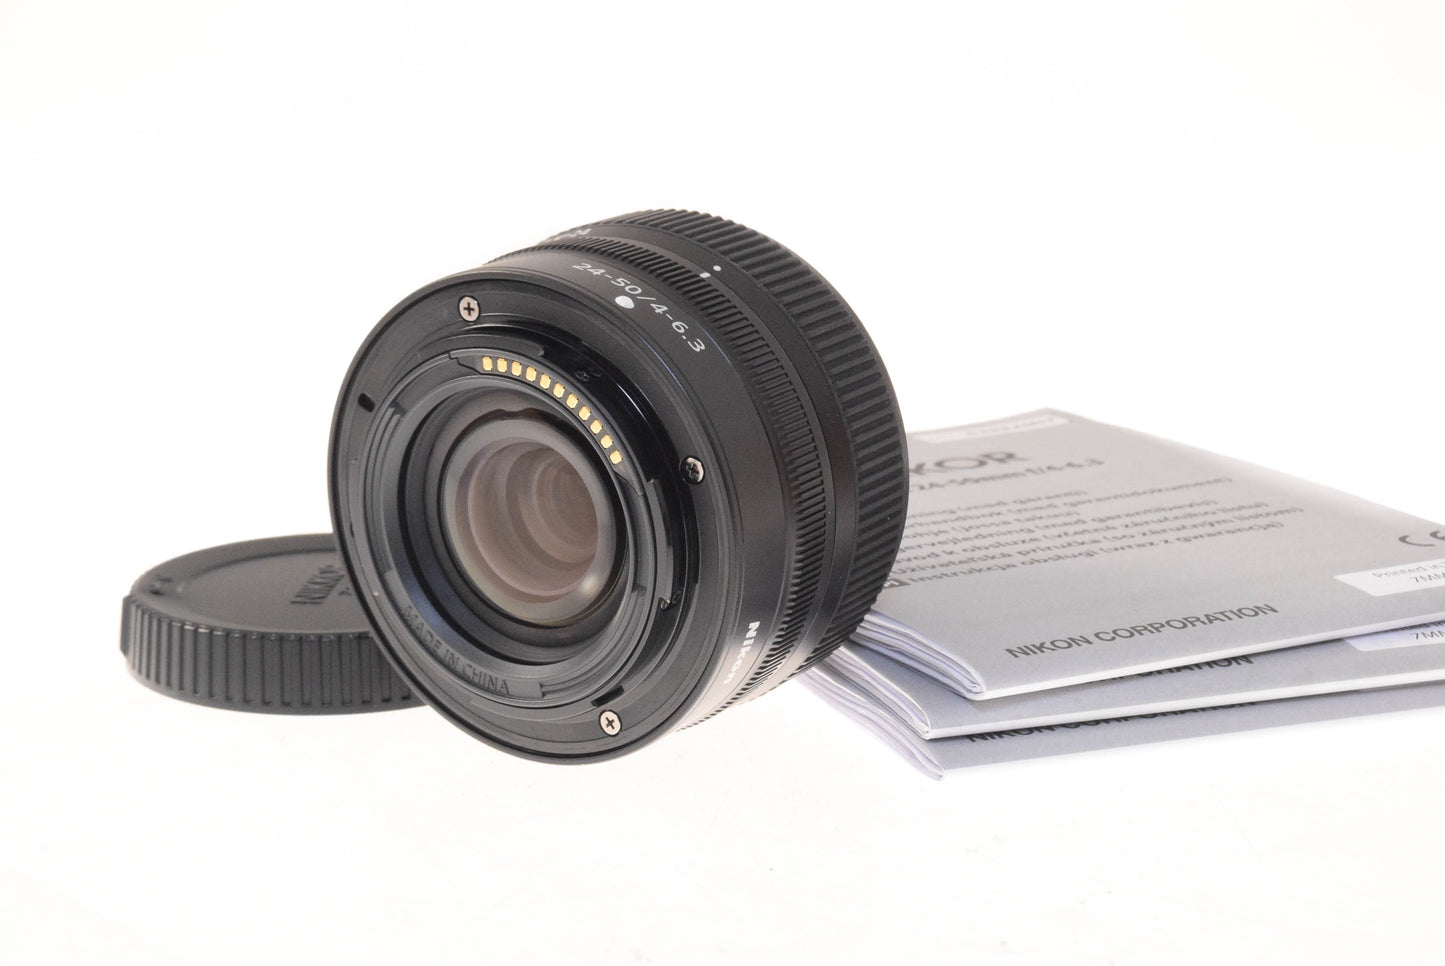 Nikon 24-50mm f4-6.3 Nikkor Z